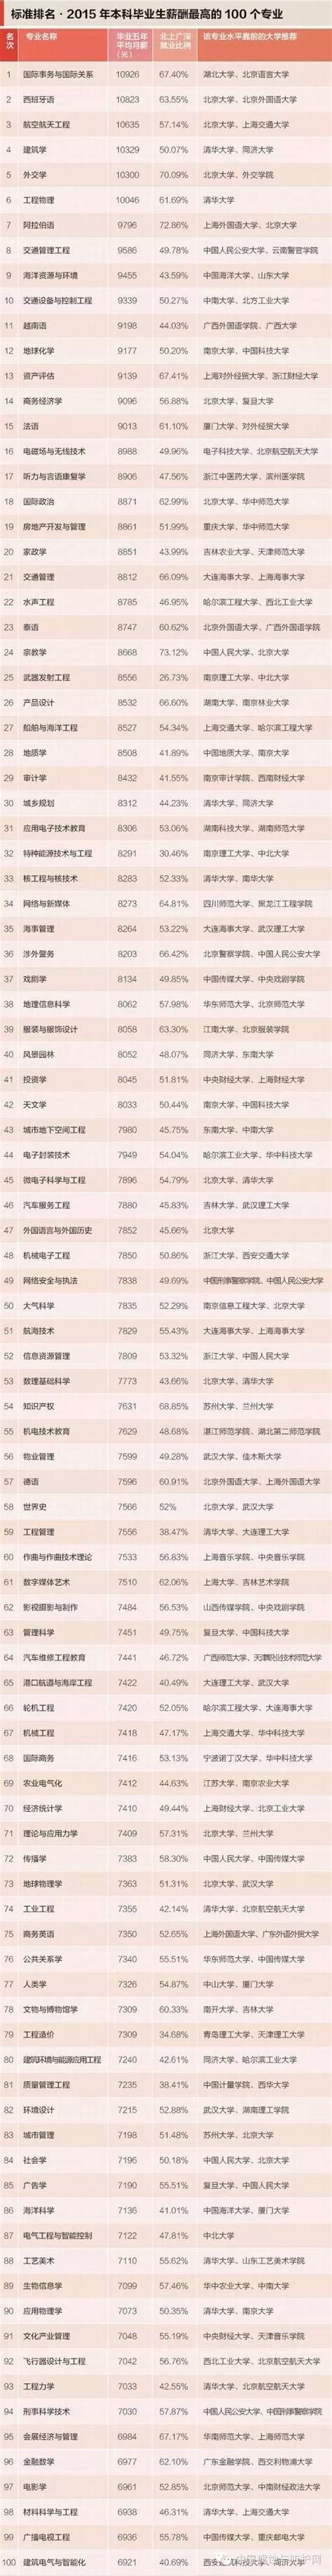 收入最高的薪酬排行榜！软件工程排名第一！—中国教育在线